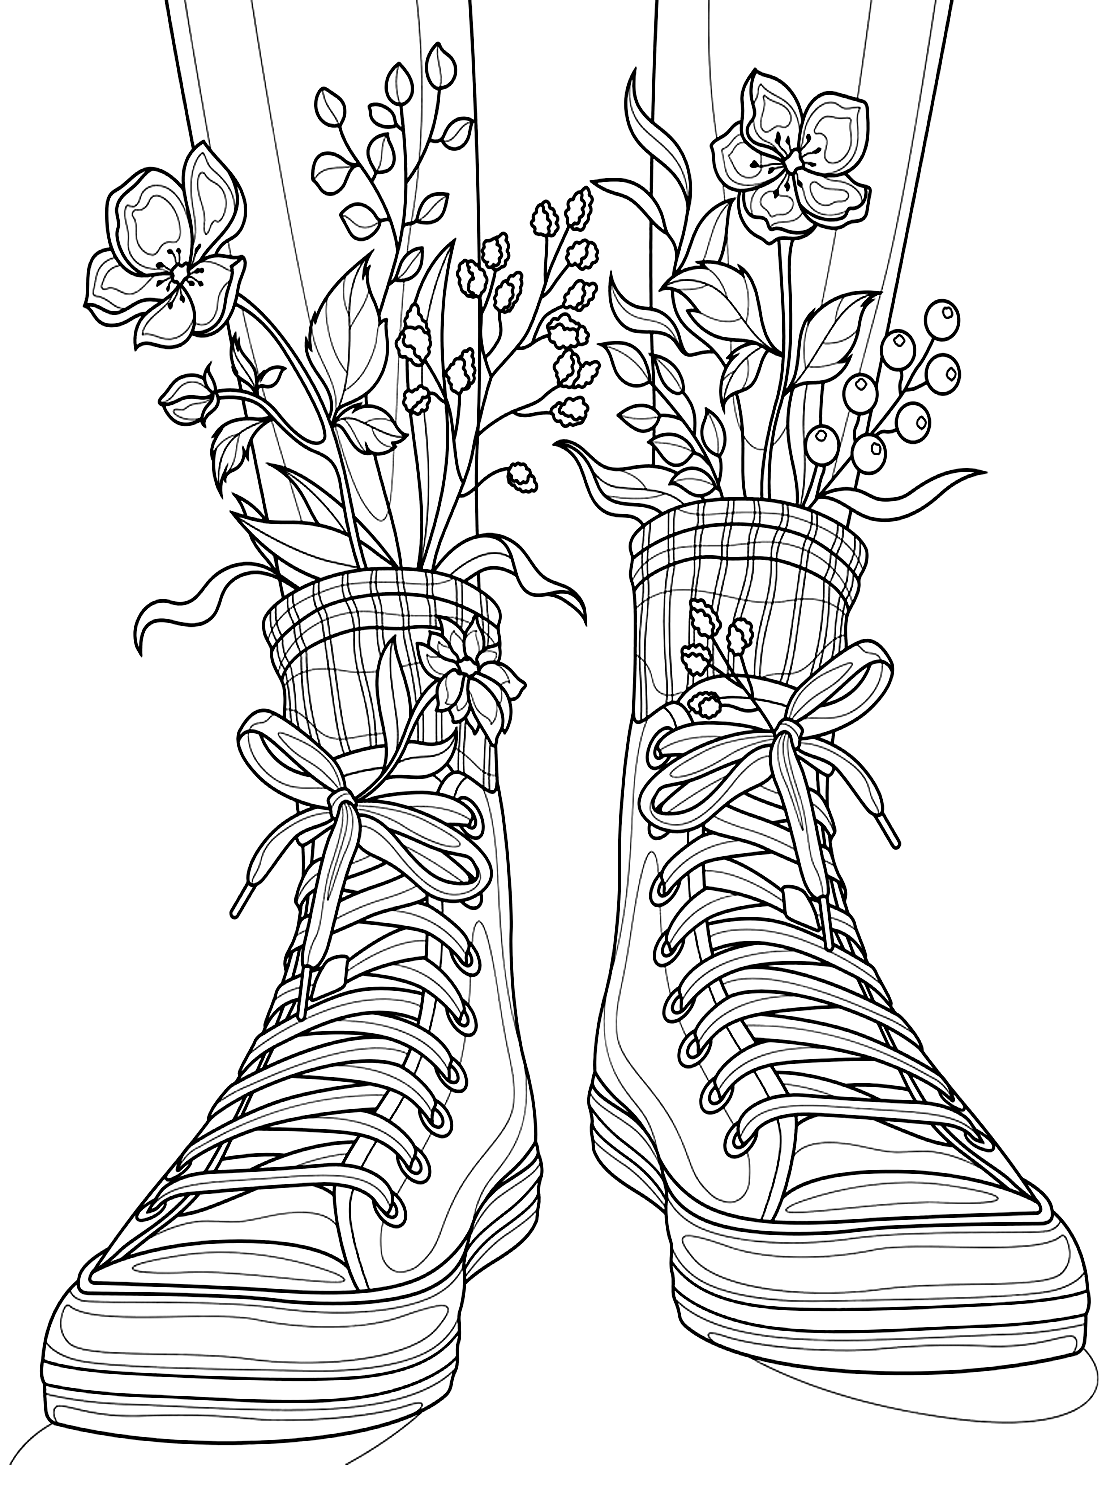 Página de cores de sapatos de flores em sapatos